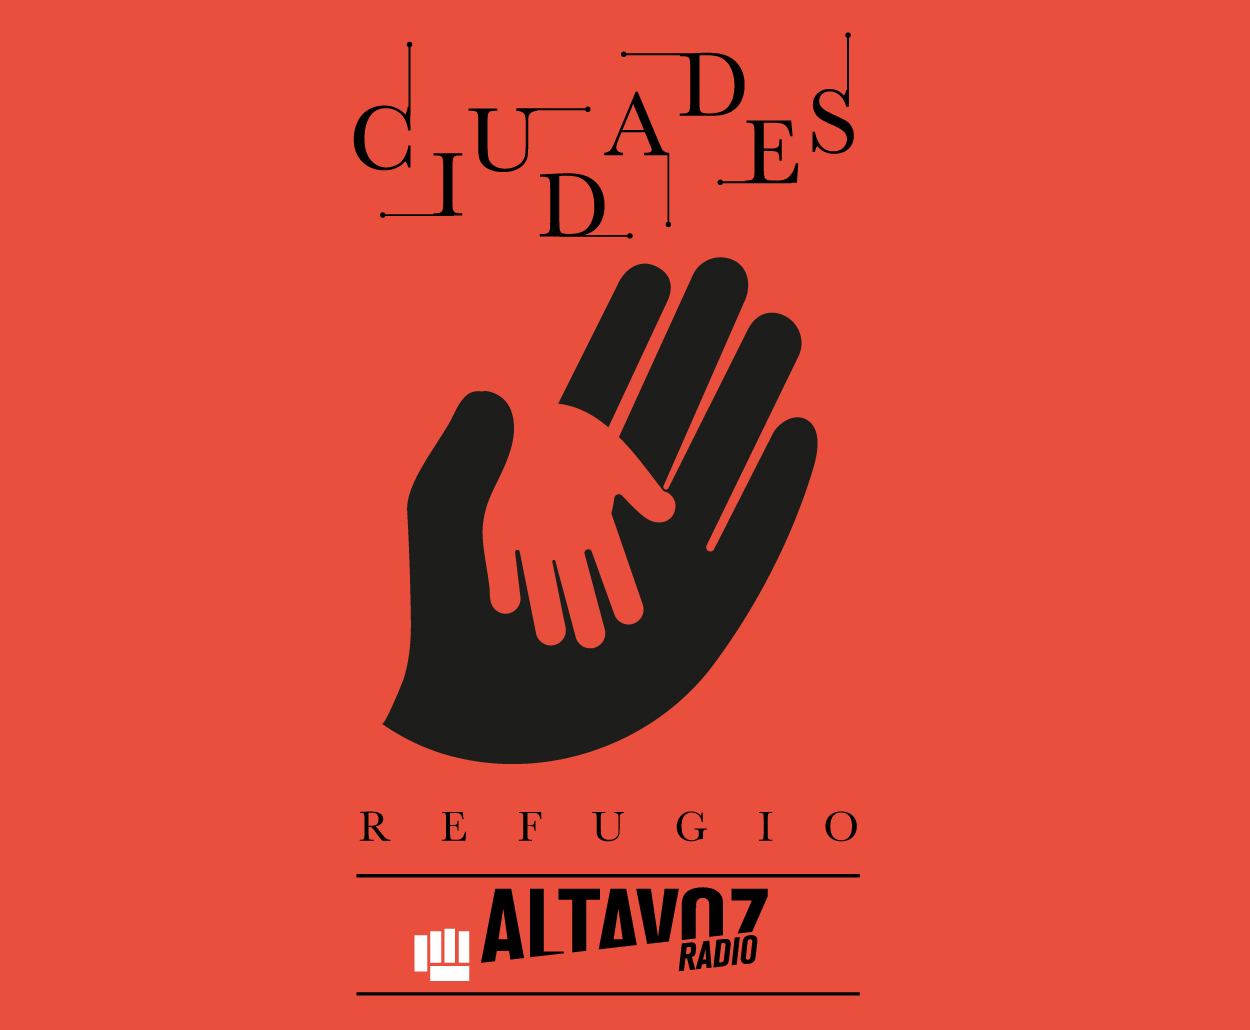 Altavoz Radio abraza a los refugiados